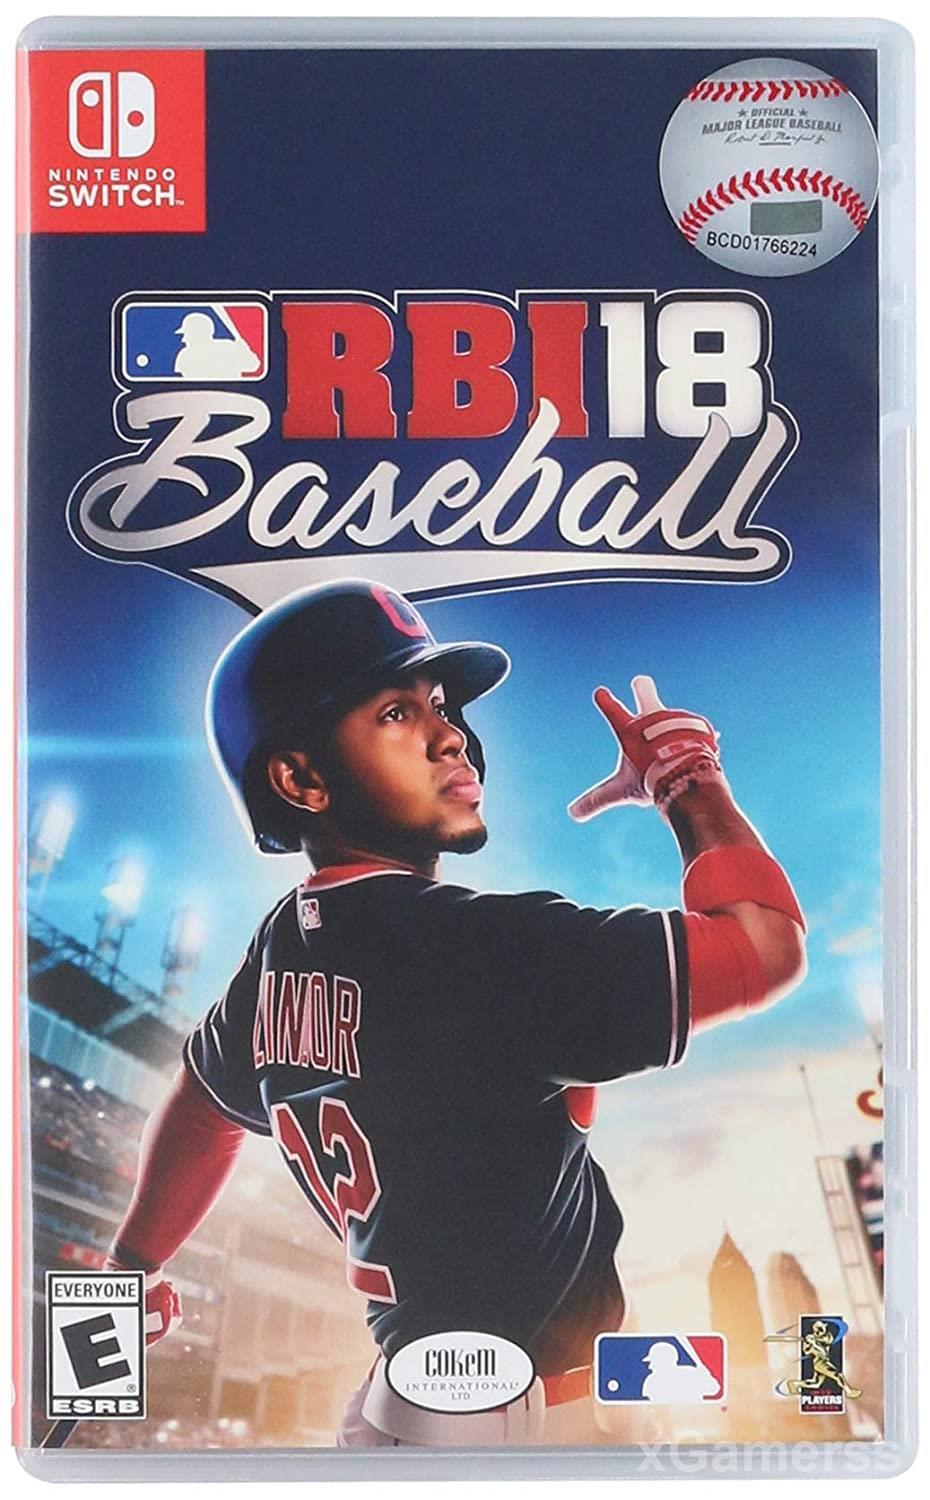 RBI 18 Baseball for Nintendo Switch